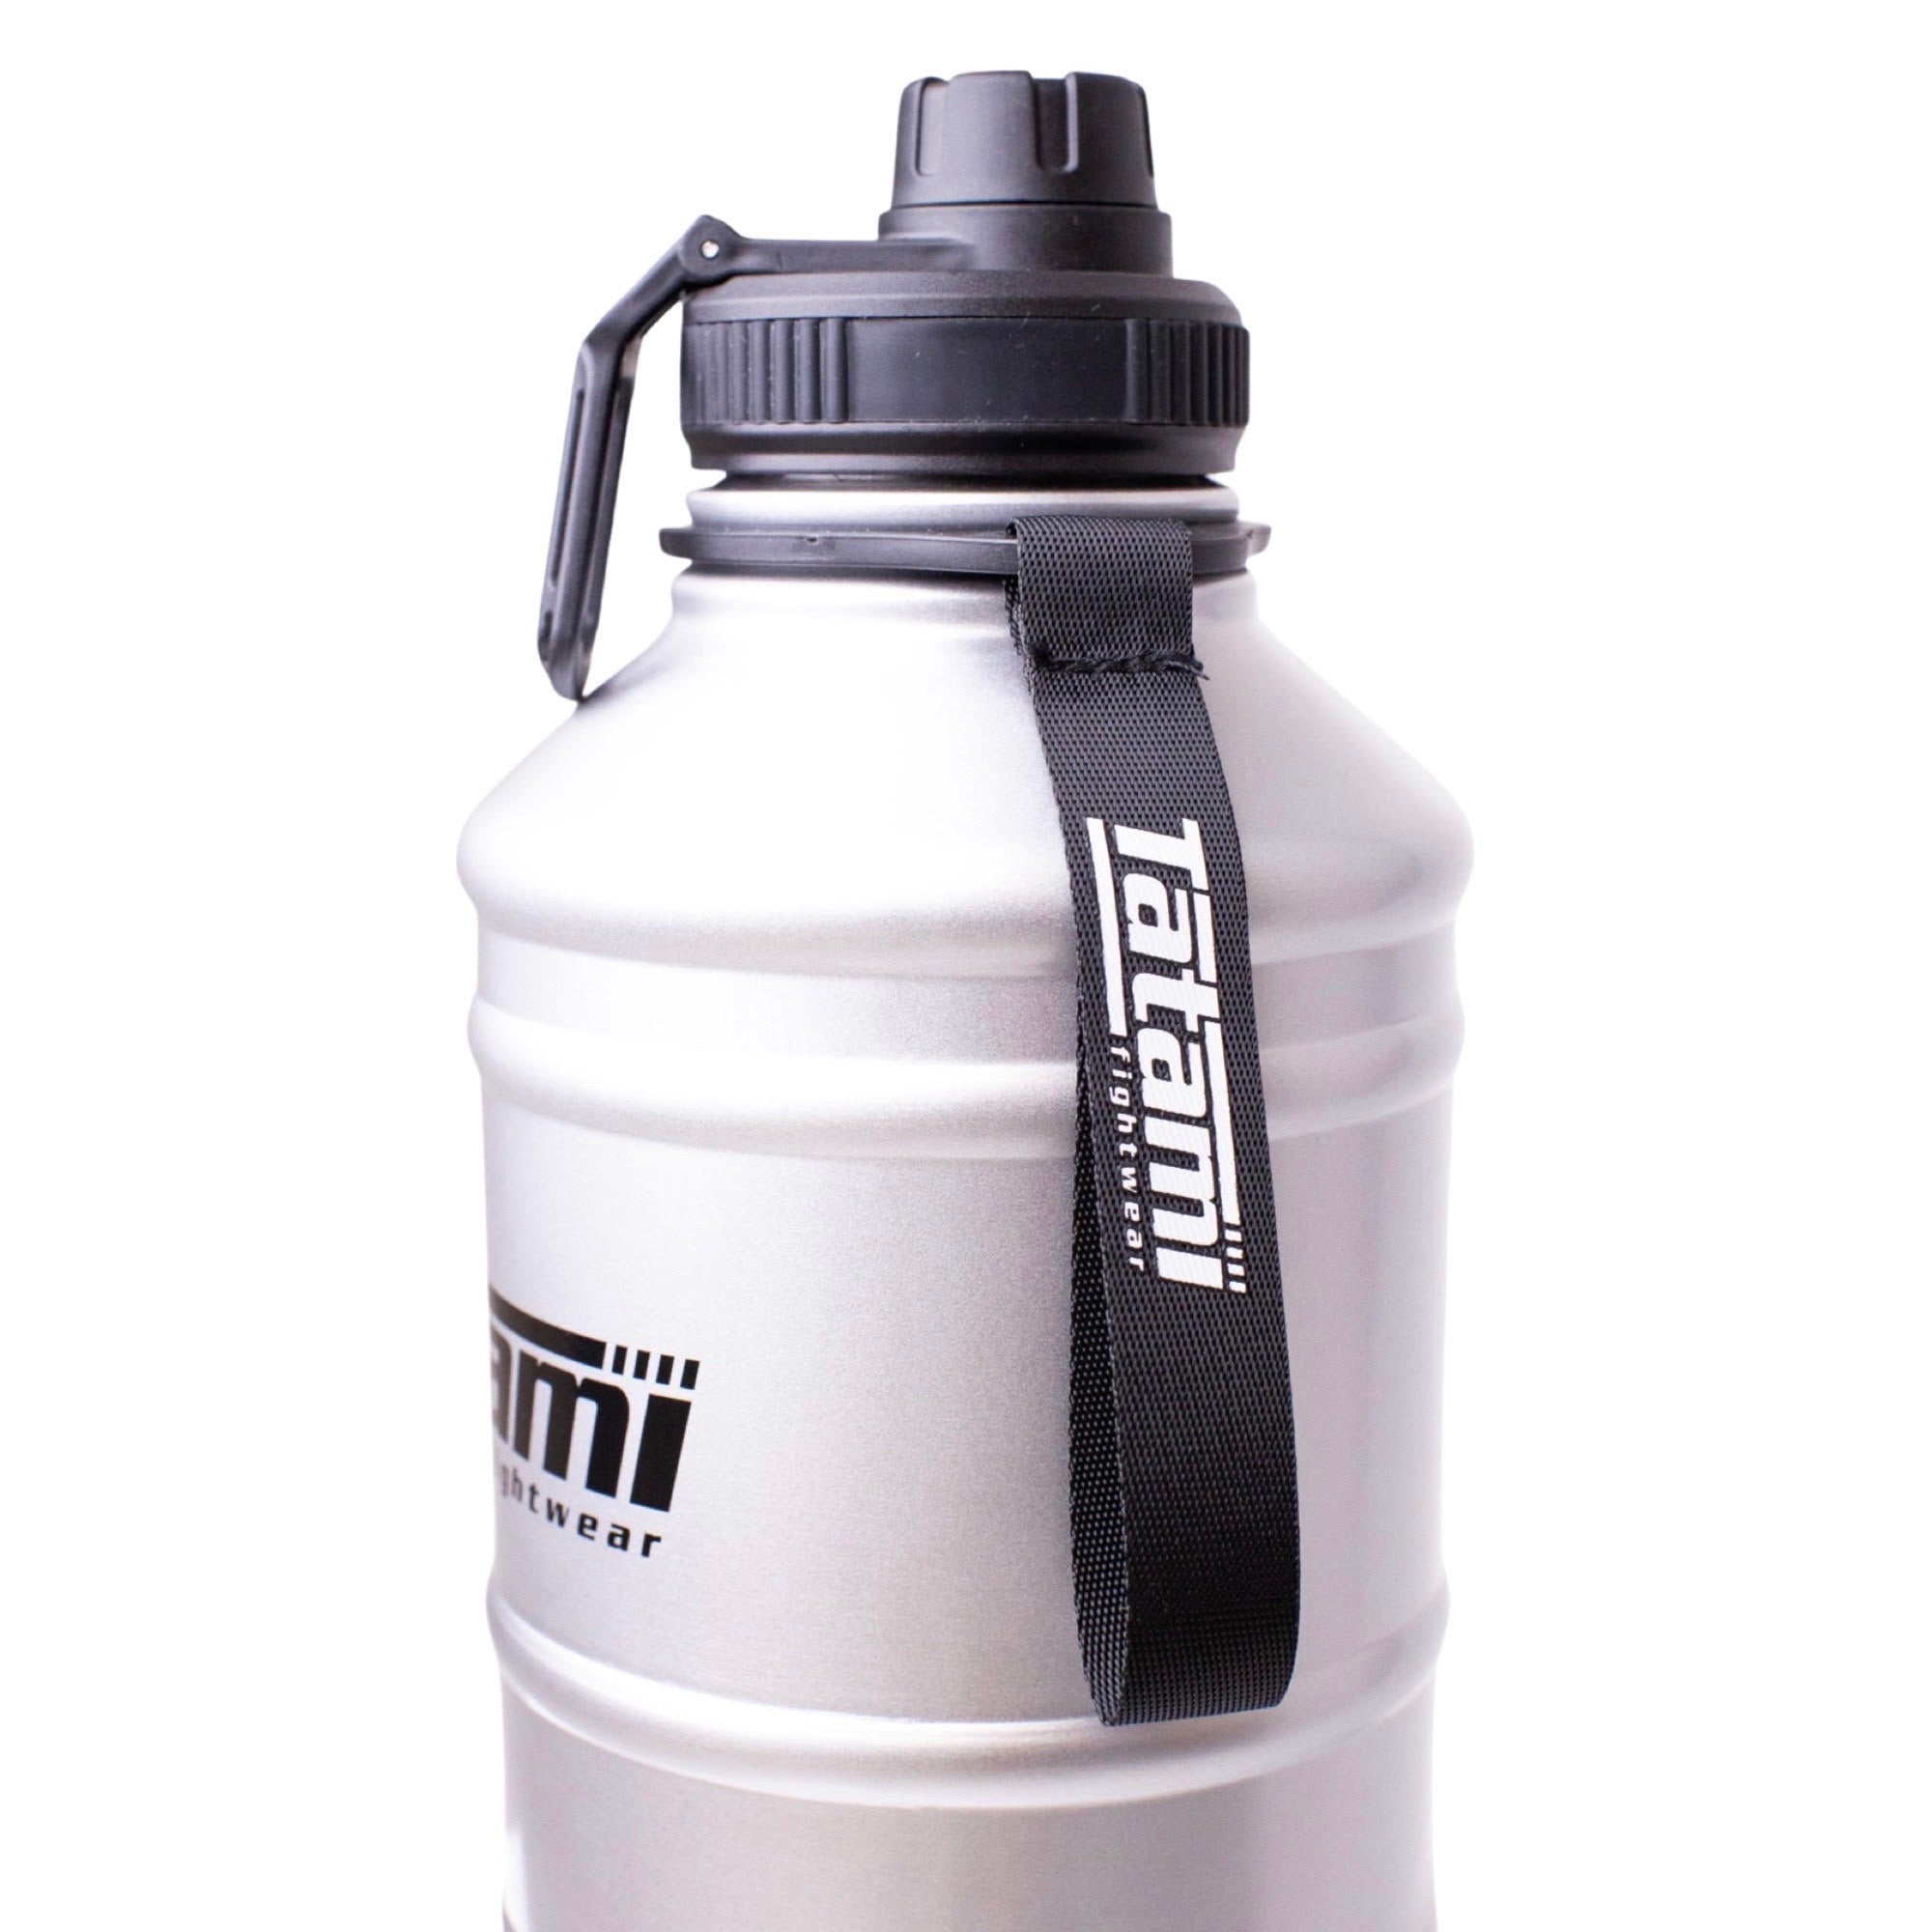 Metal 2.2L Water Bottle - Grey